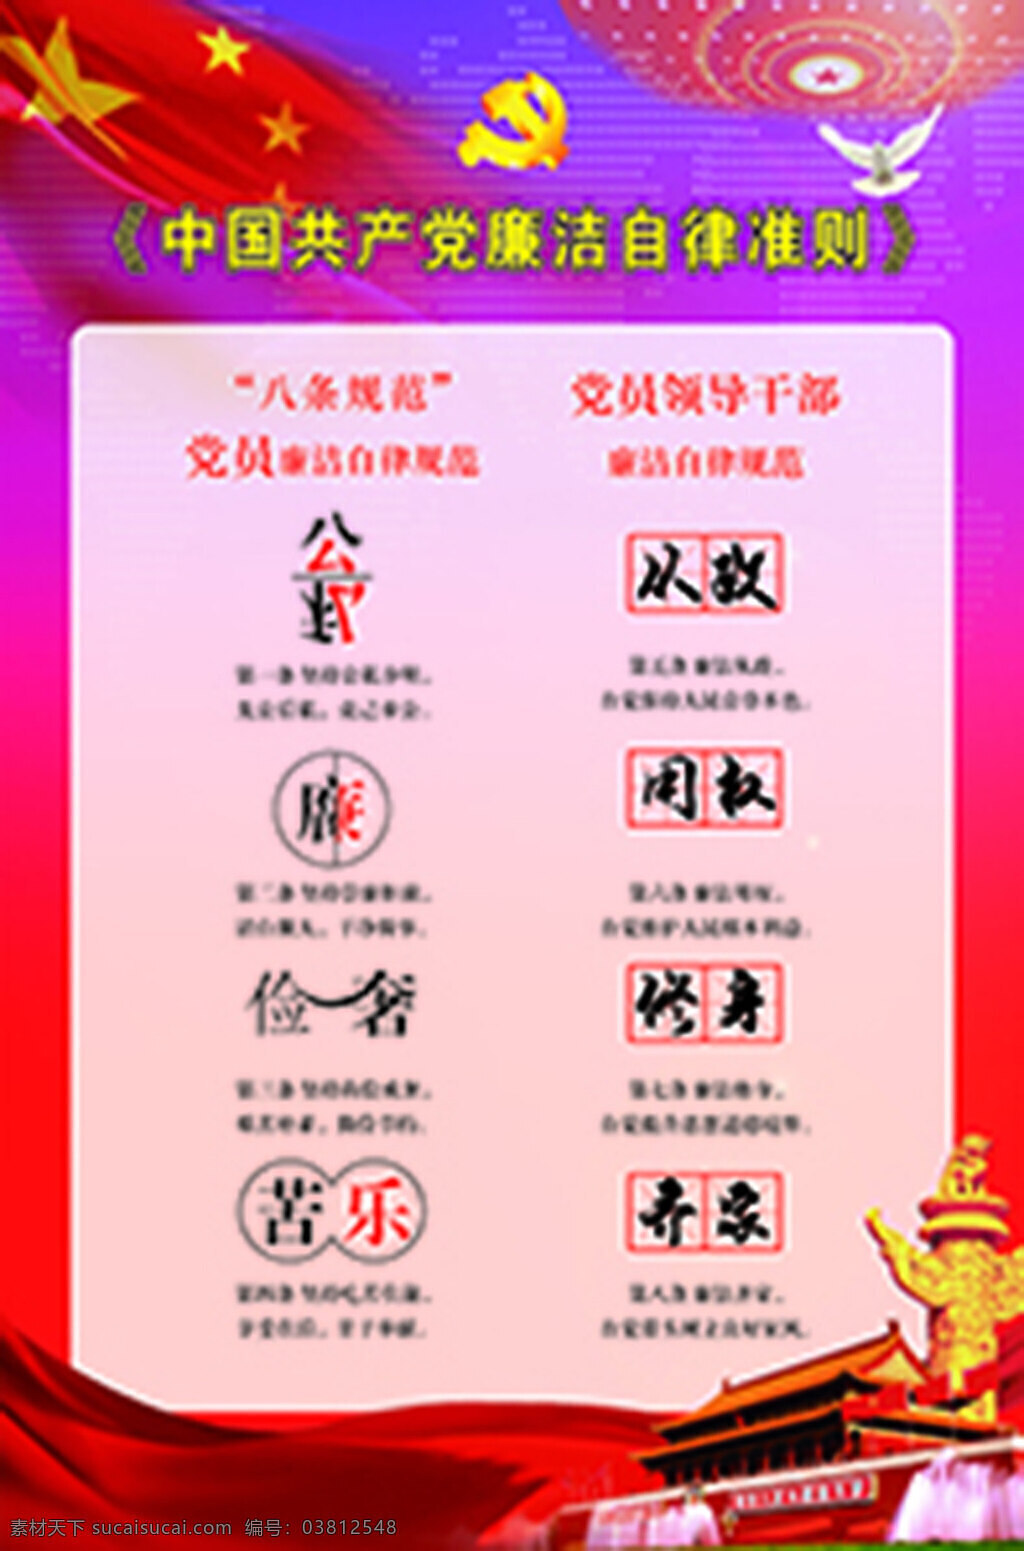 一图读懂 中国共产党 廉洁自律 准则 八条规范 红色